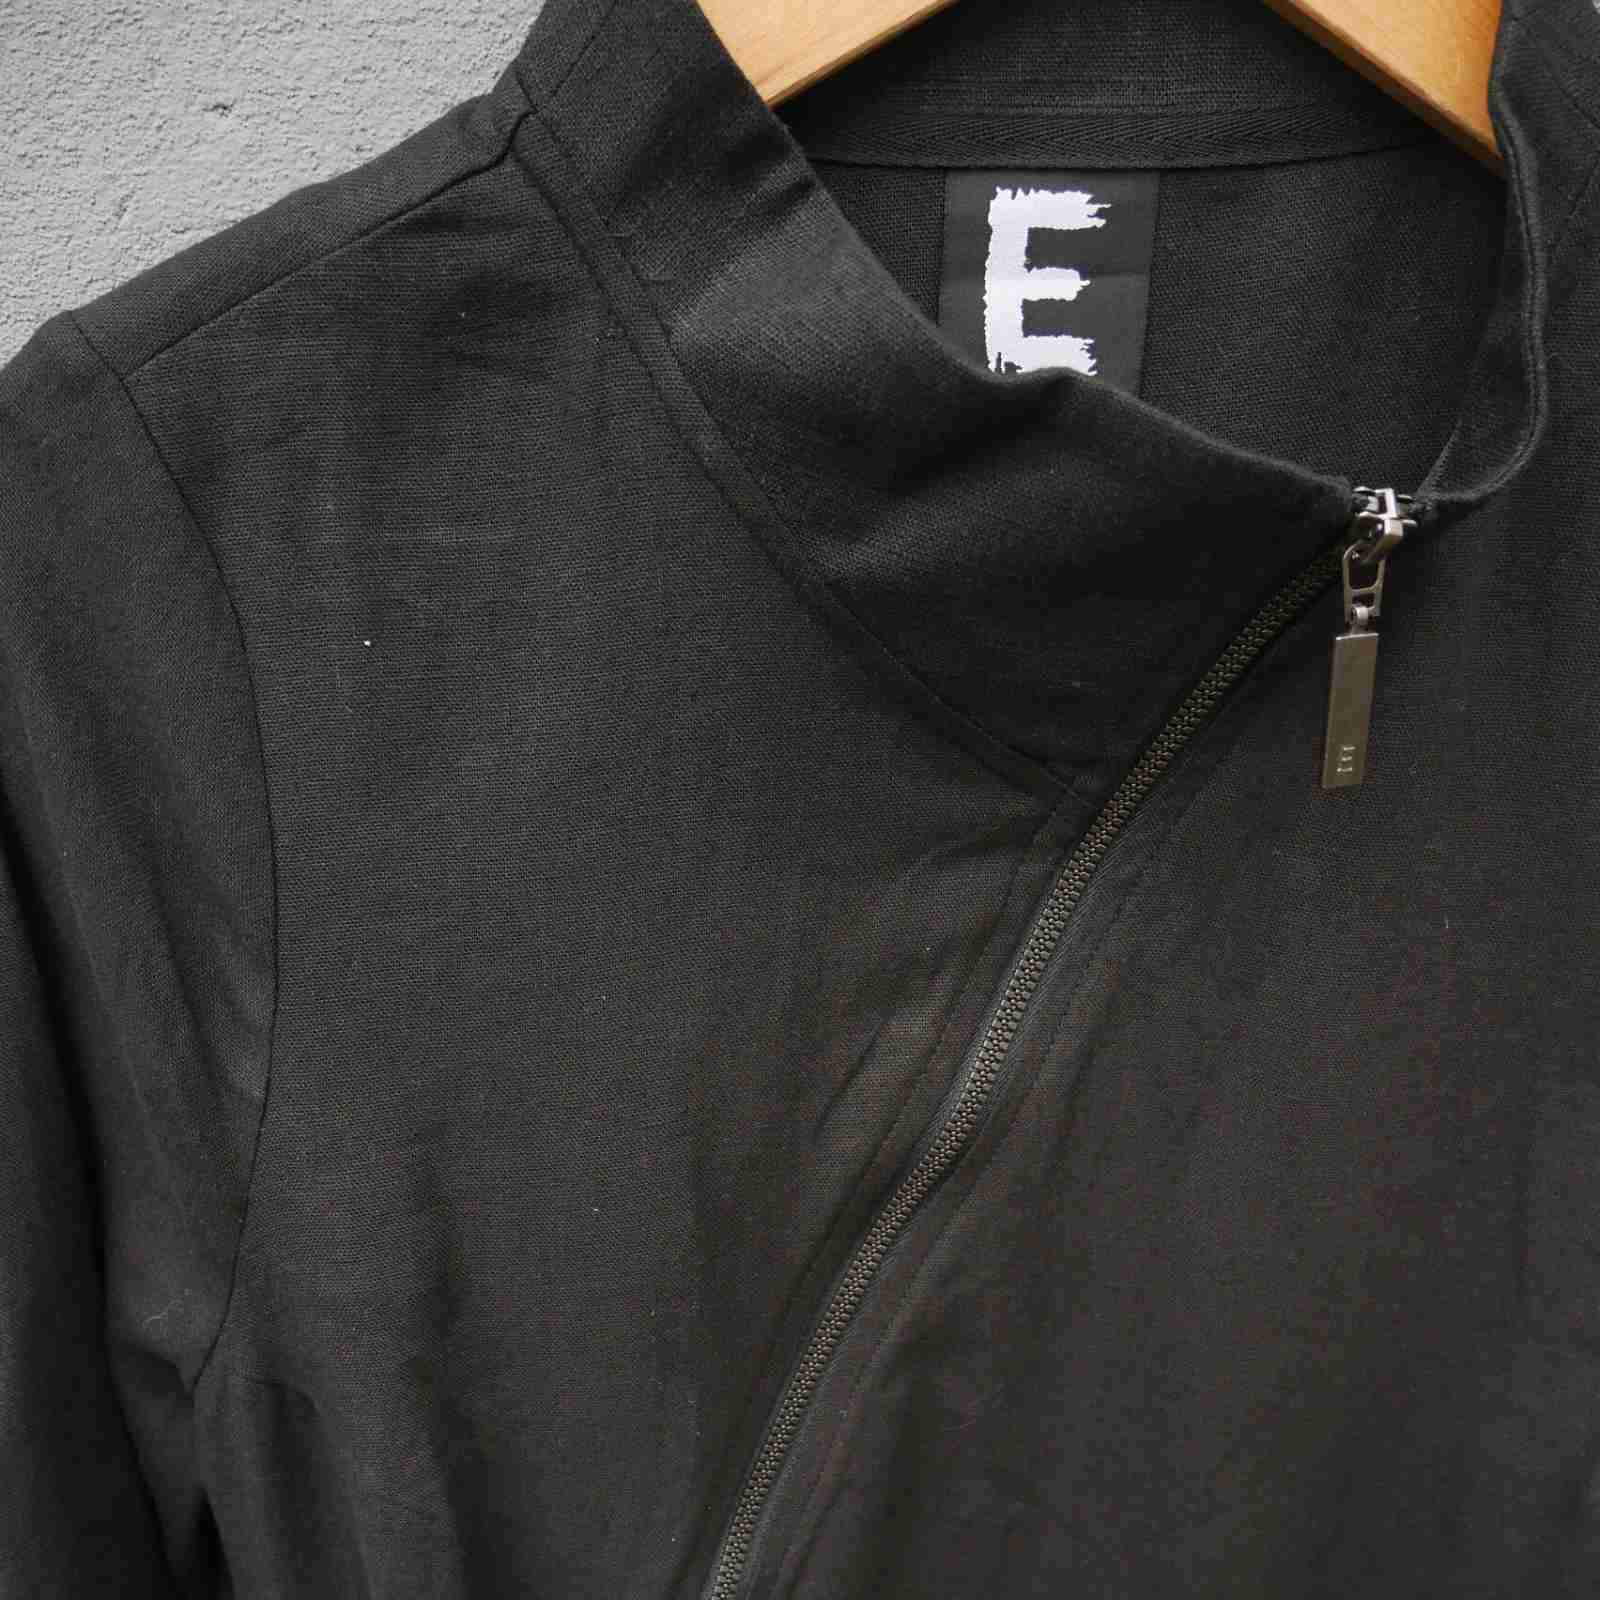 Krave detalje på sort hørkjole med viskose fra E-Avantgarde